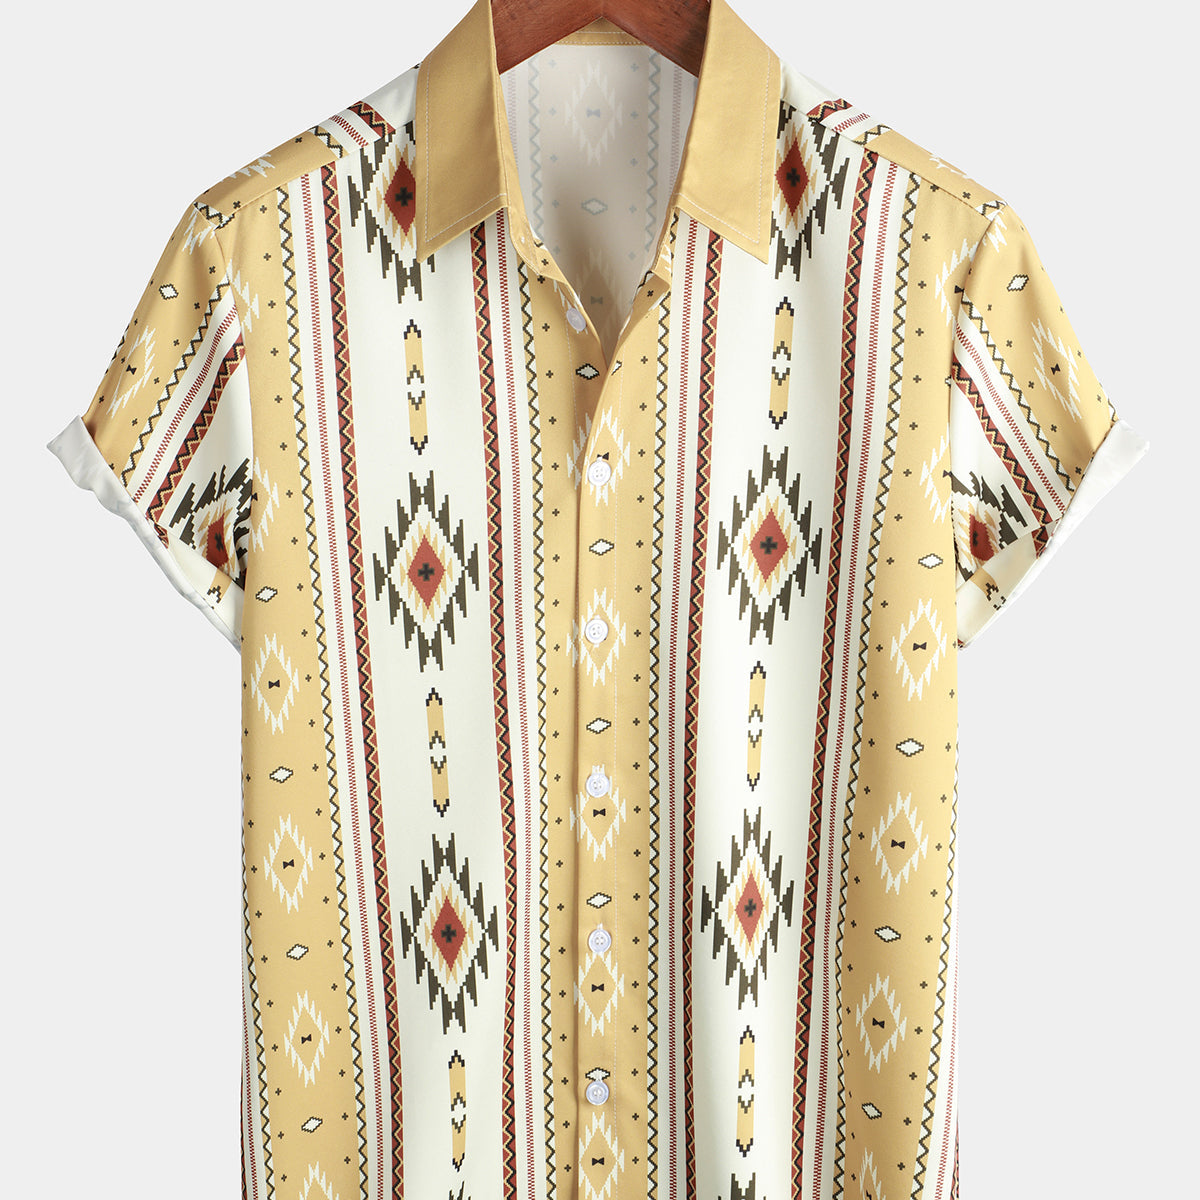 Camisa vintage con botones y estampado azteca retro de manga corta a rayas verticales de los años 70 para hombre